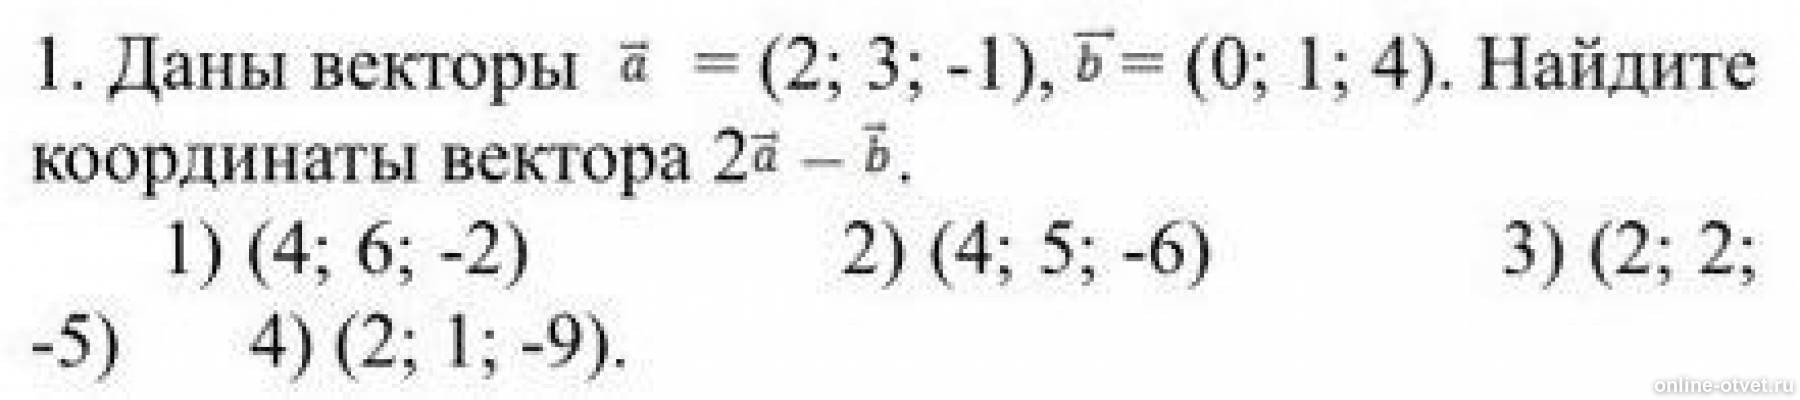 Даны координаты векторов a 3 5 2. Найдите координаты вектора 2а-3b. Даны векторы найти координаты вектора. Даны векторы {–3; 1; 4} и {2; –2; 1}. Найдите координаты вектора = + .. Даны векторы a 2 4 и b -3 2 Найдите координаты векторов.